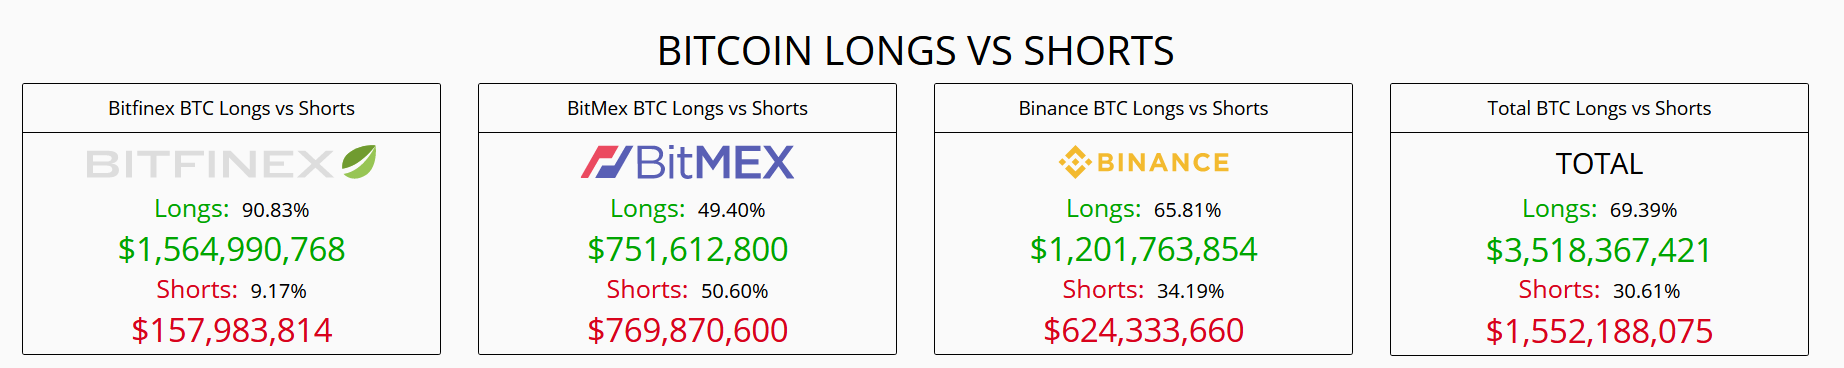 Bitcoin longs vs. shorts